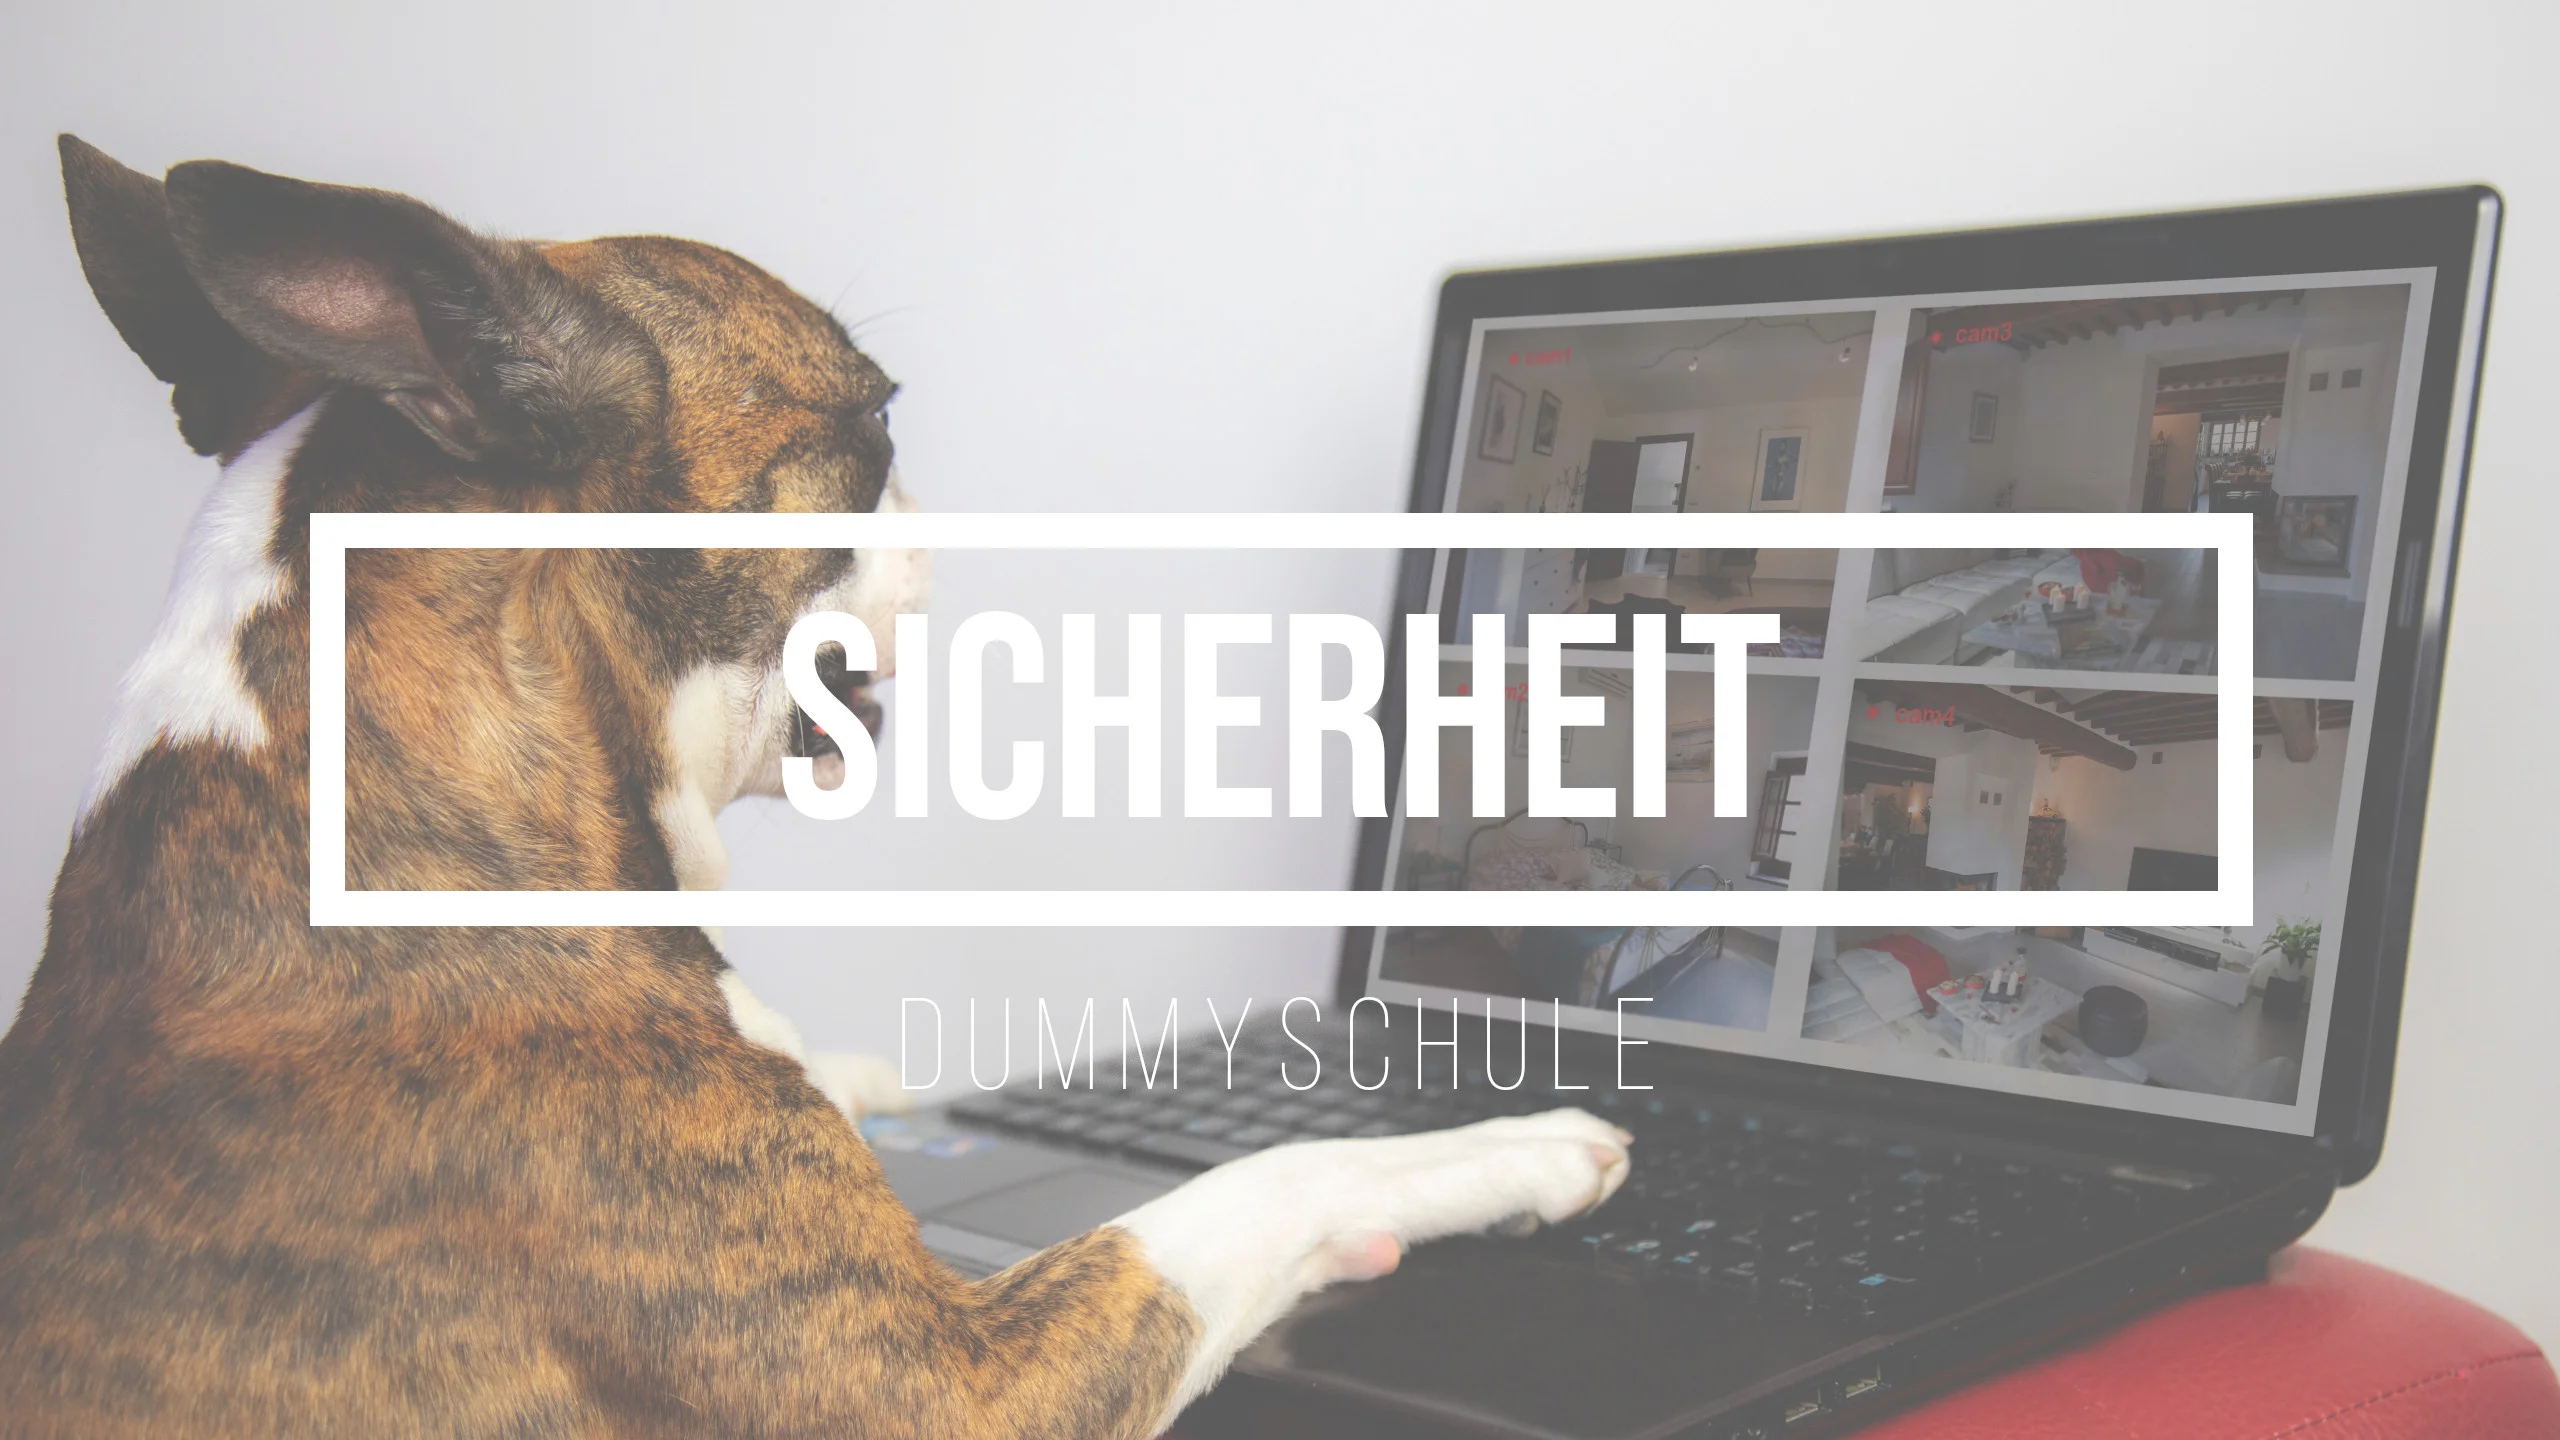 Das Bild gehört zu dem Blog-Beitrag Sicherheit. Ein Hund, der wie ein Boxer aussieht, sitzt vor einem Laptop, auf dessen Bildschirm die Ansichten von Überwachungskameras zu sehen sind, die verschiedene Zimmer eines Hauses zeigen. Der Hund scheint interessiert auf den Bildschirm zu blicken, während er eine Pfote auf die Tastatur legt.